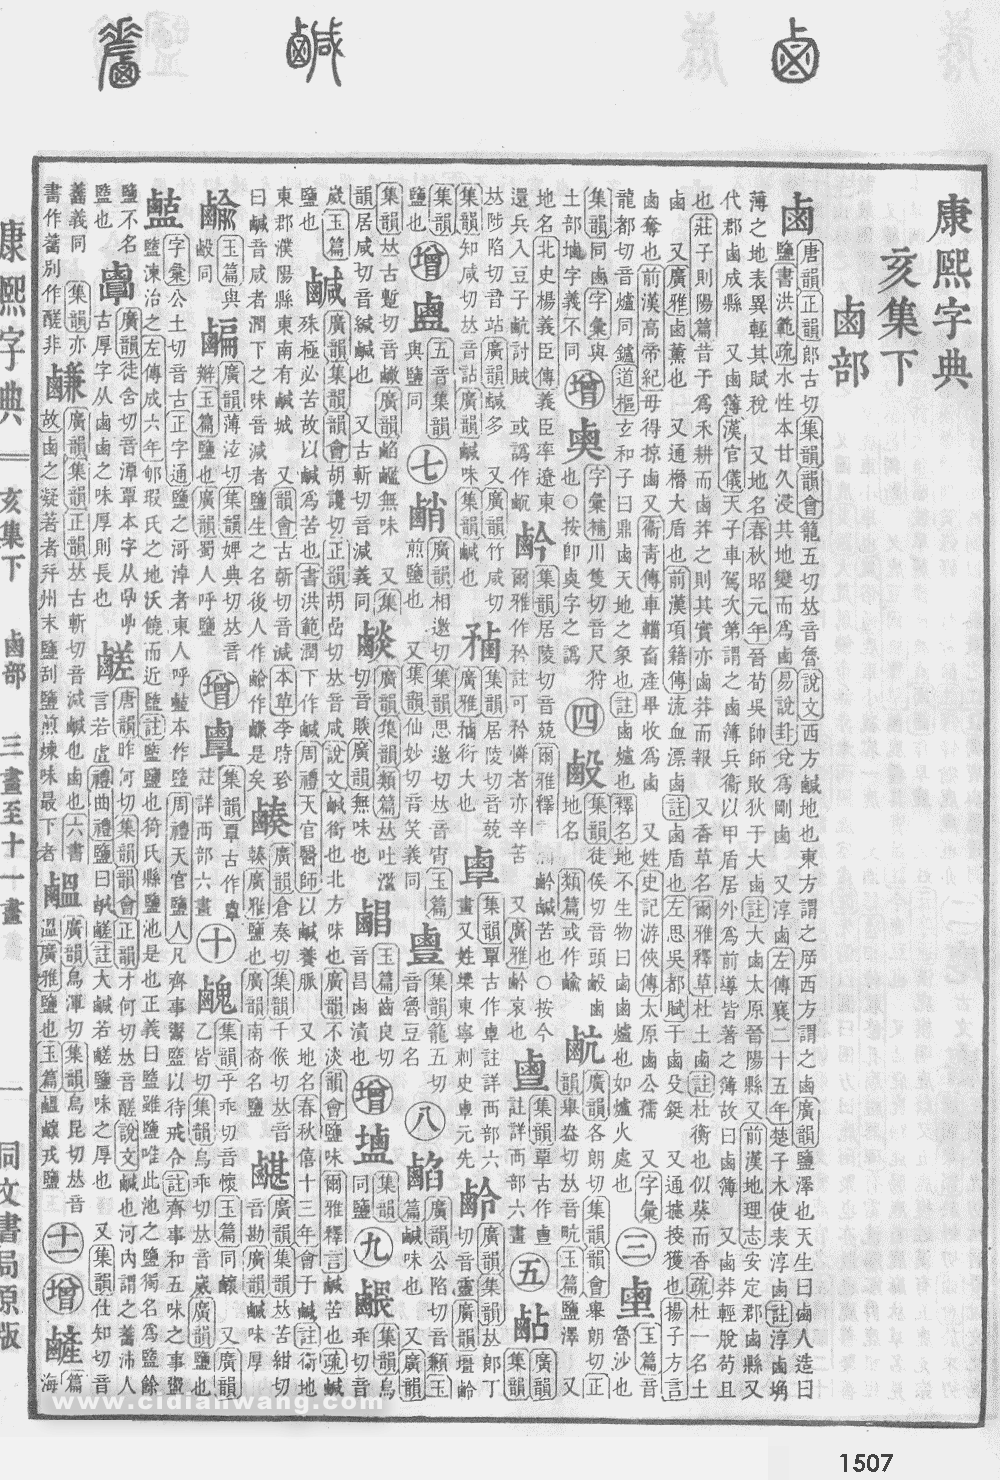 康熙字典掃描版第1507頁